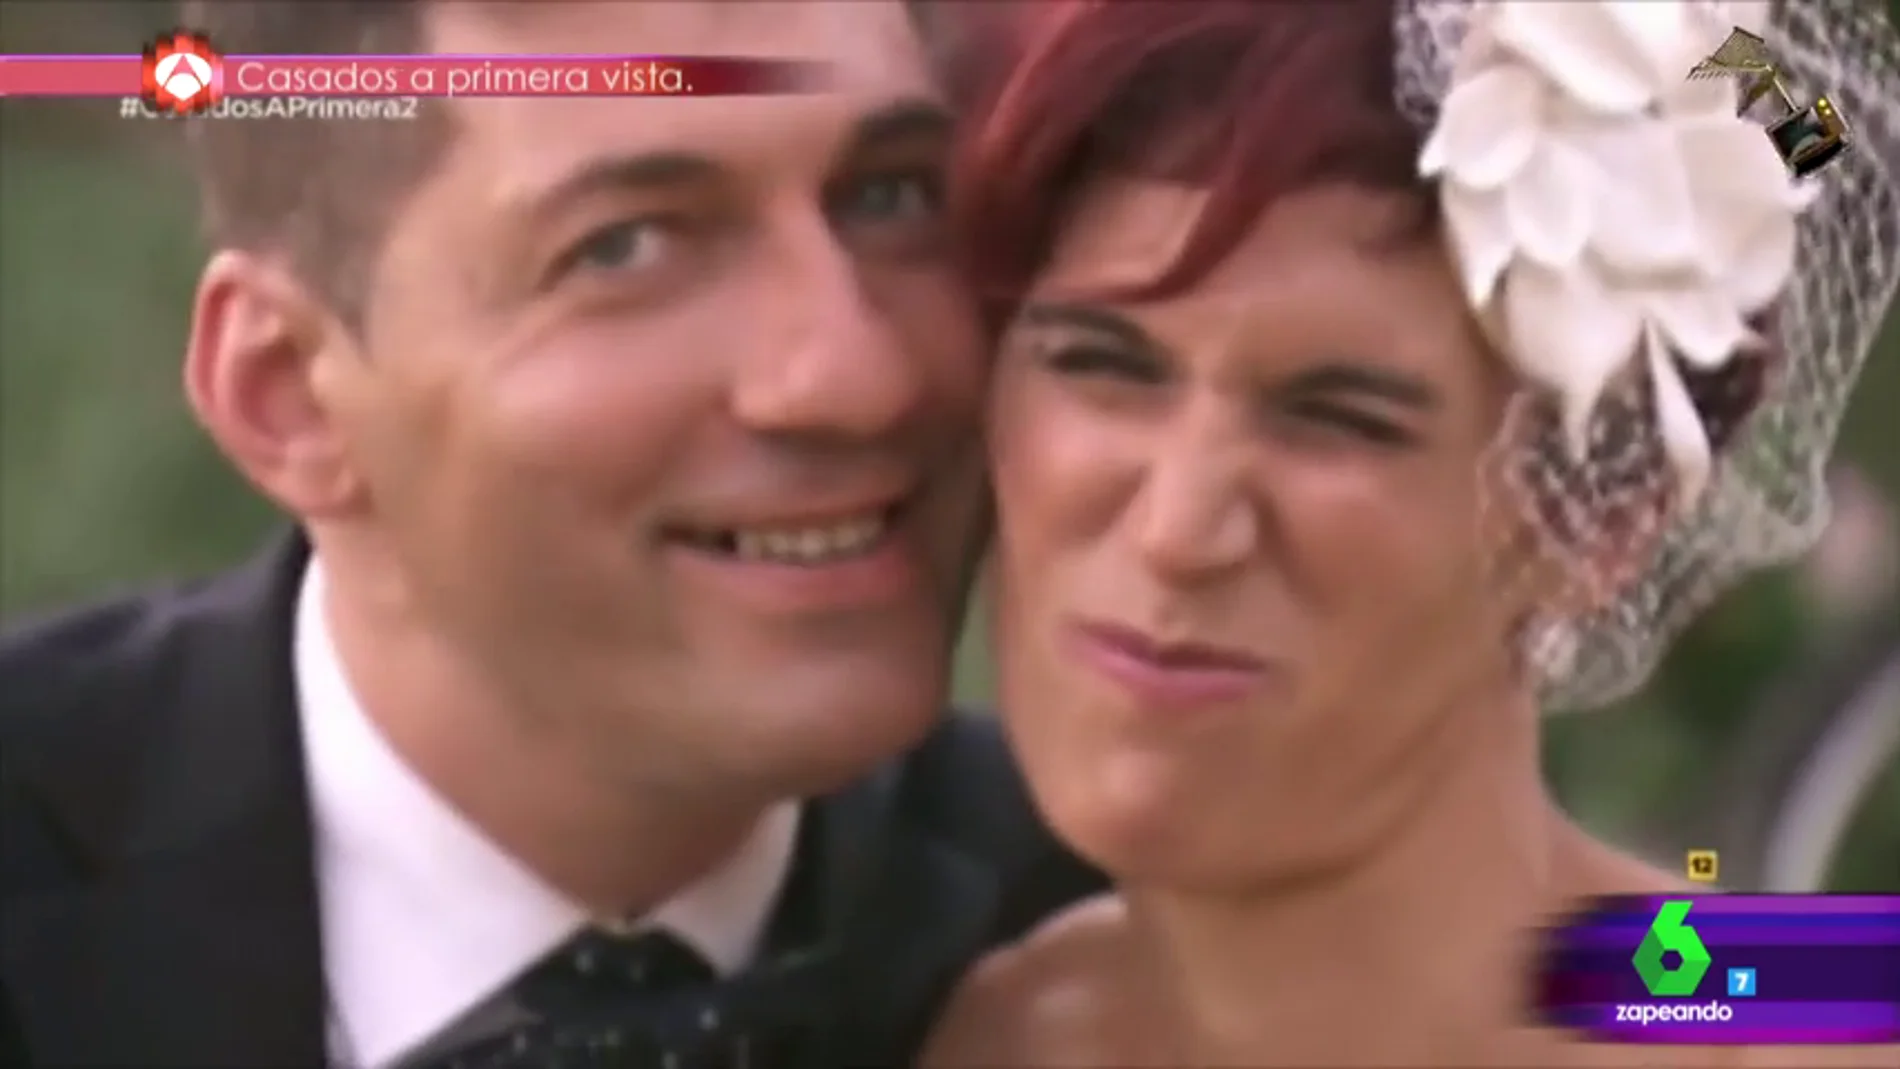 Frame 61.793836 de: 'Divorciados a primera vista' , cuarto vídeo finalista al mejor momentazo de los premios Zapeando